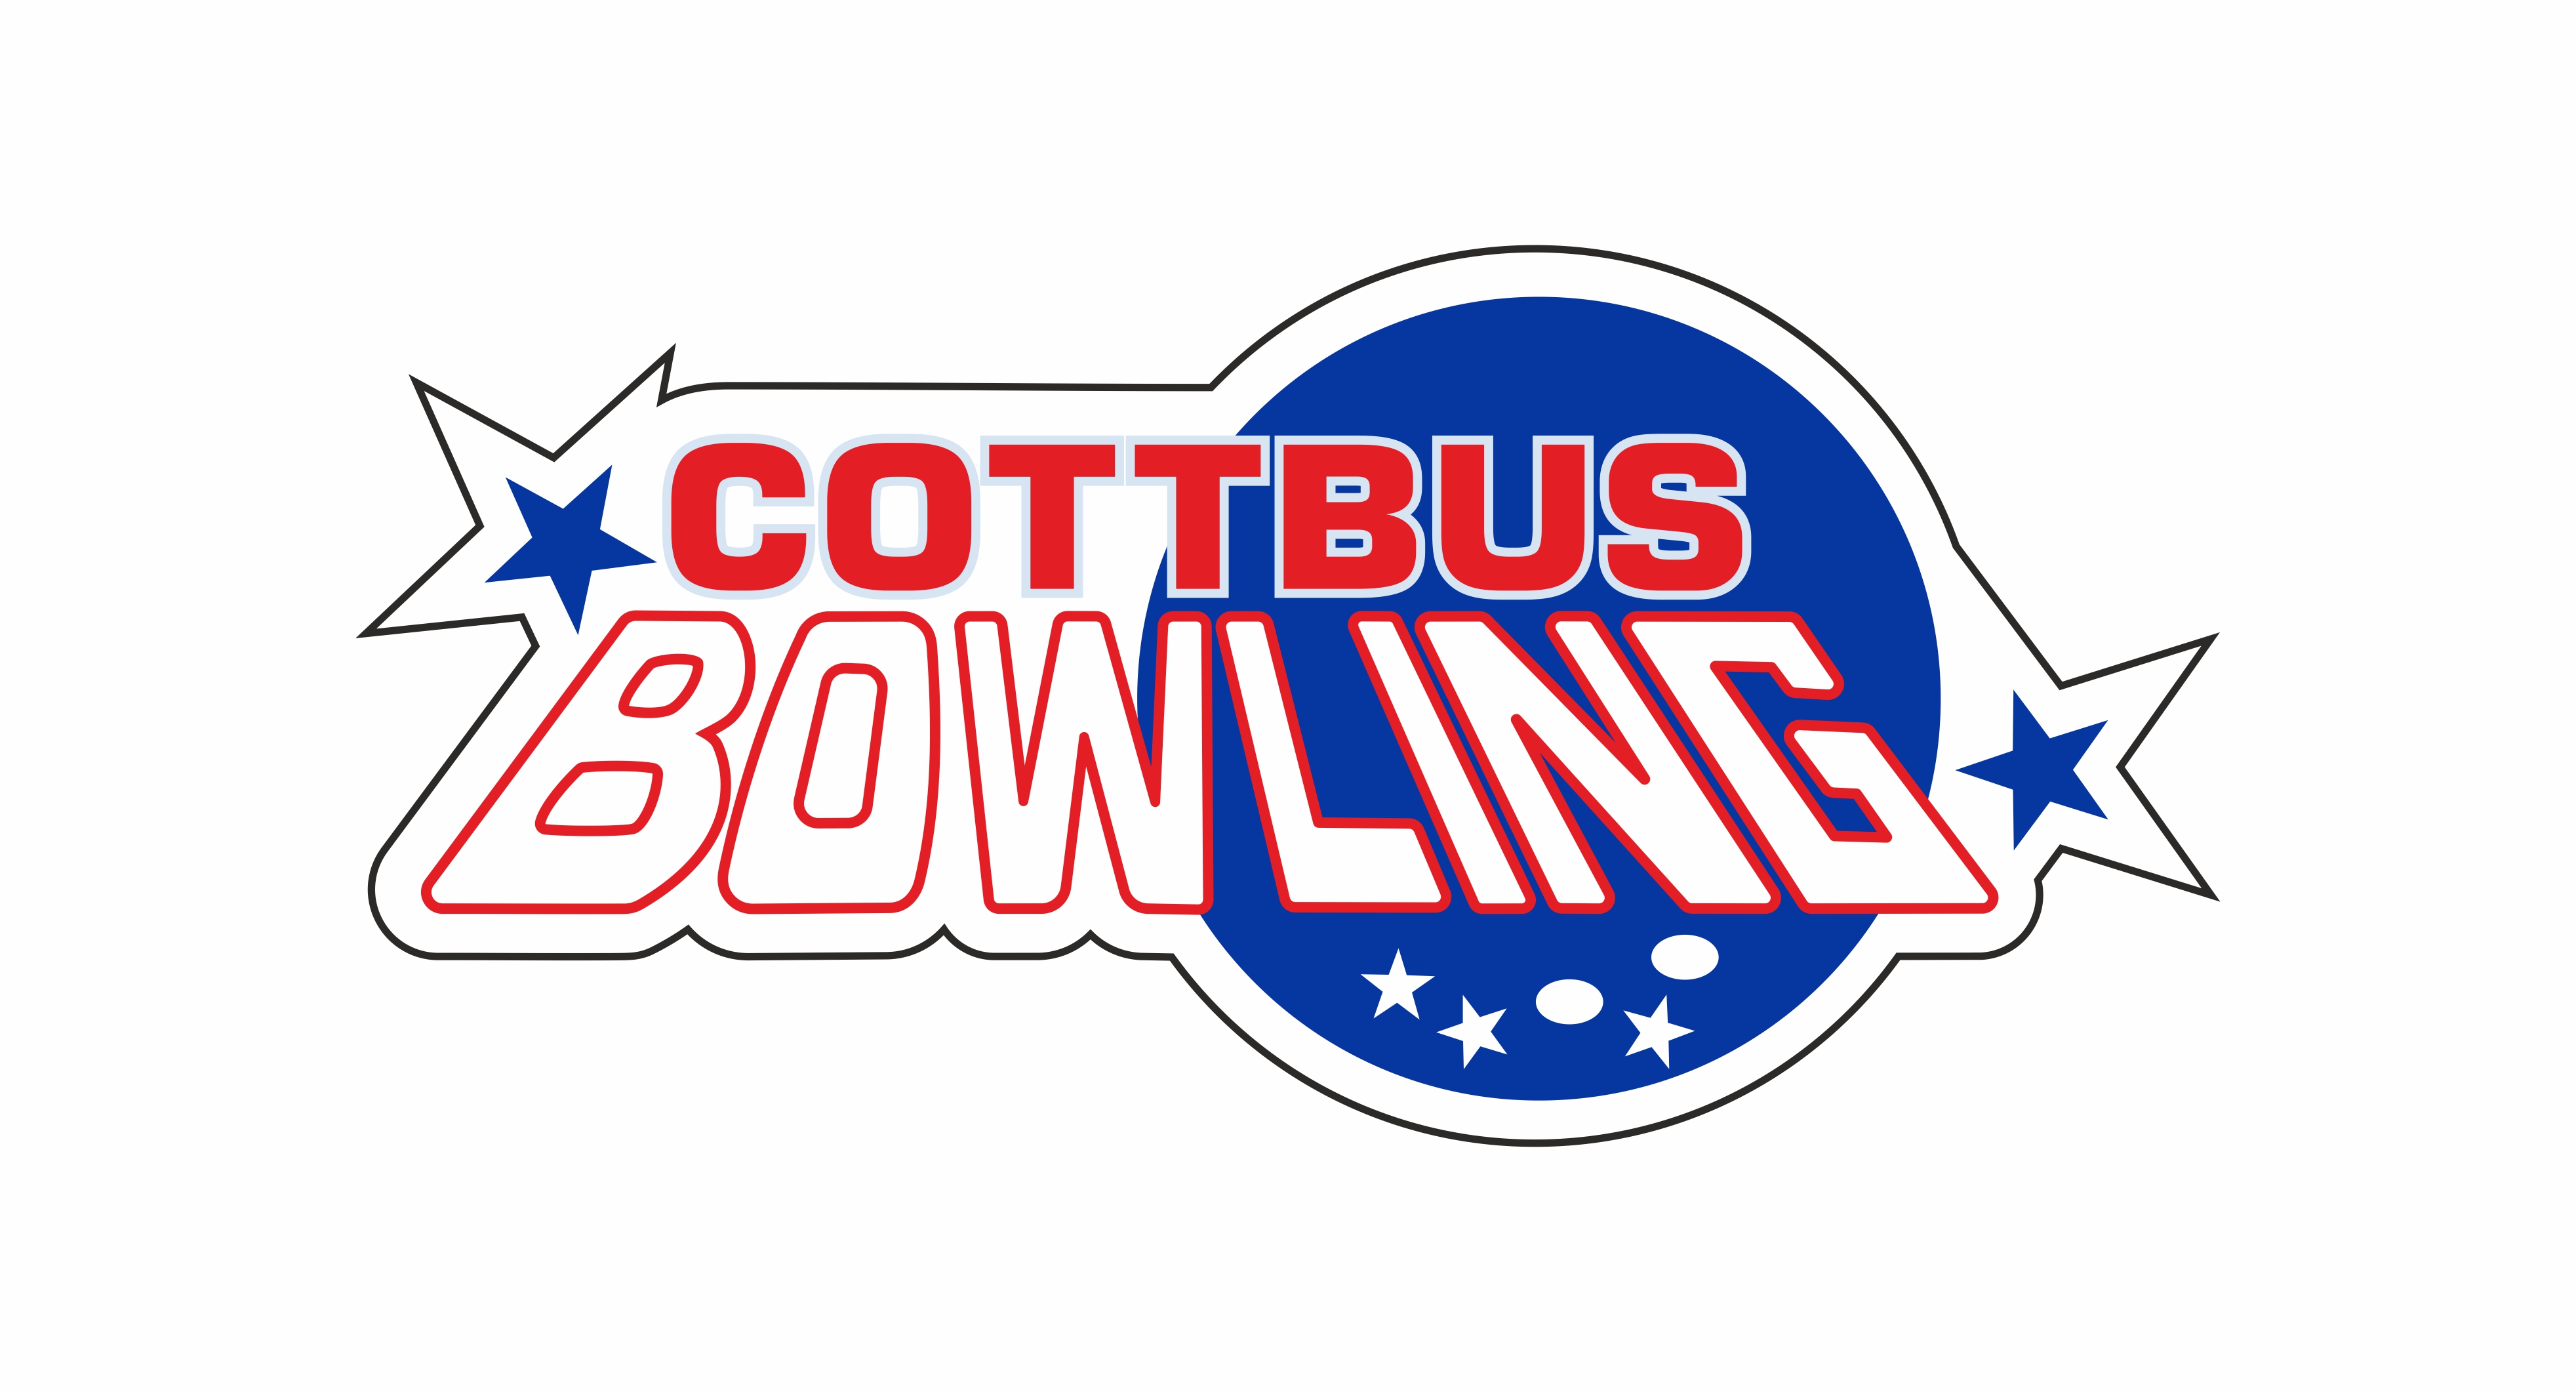 Cottbus Bowling